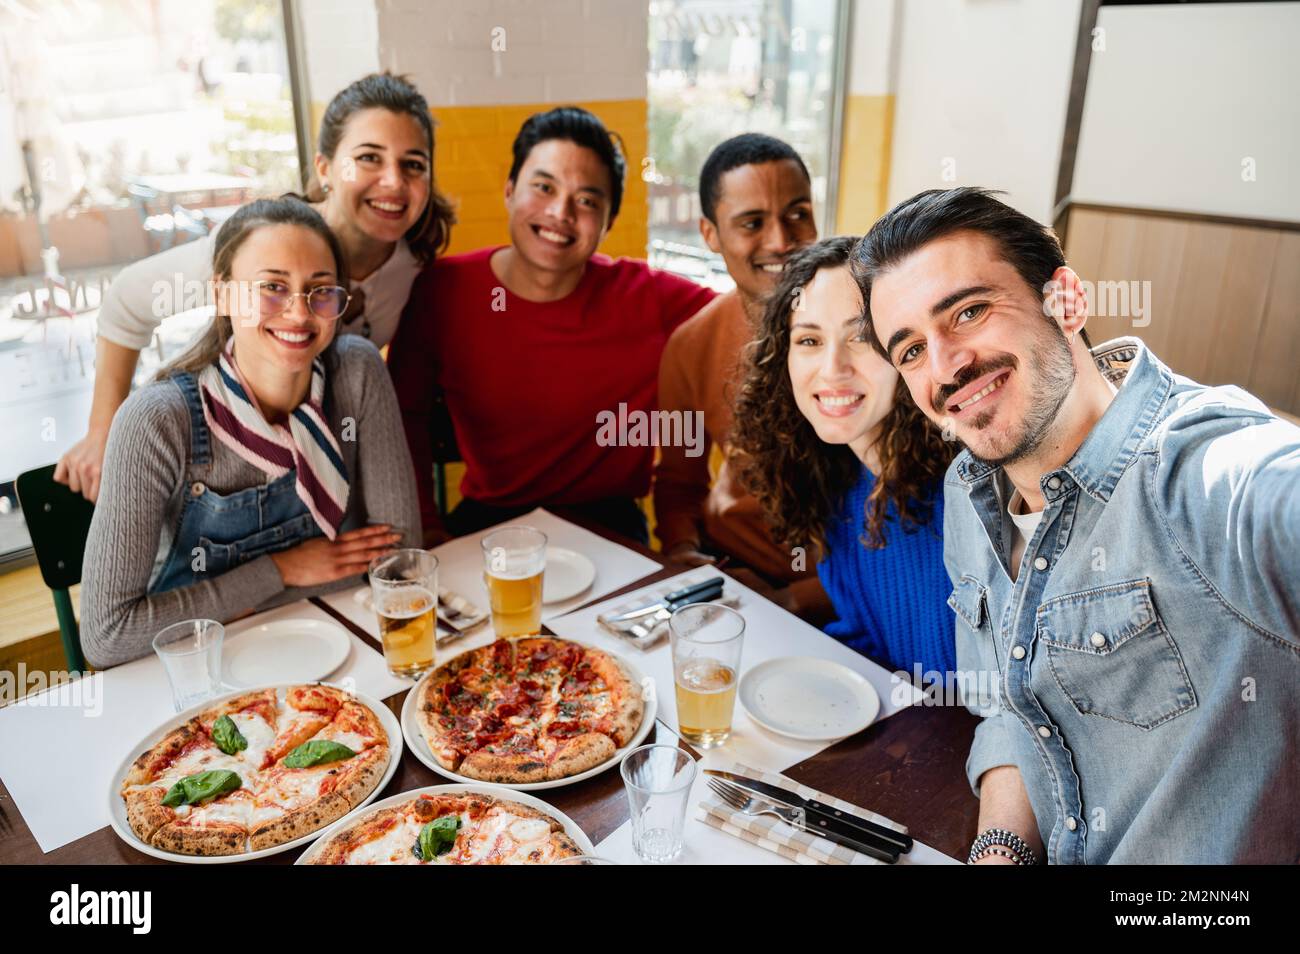 Eine multiethnische Gruppe von sechs Freunden macht ein Selfie-Foto in einem Restaurant am Tisch, während sie Pizza essen. Menschen mit fröhlichem, fröhlichem Gesichtsausdruck. Stockfoto